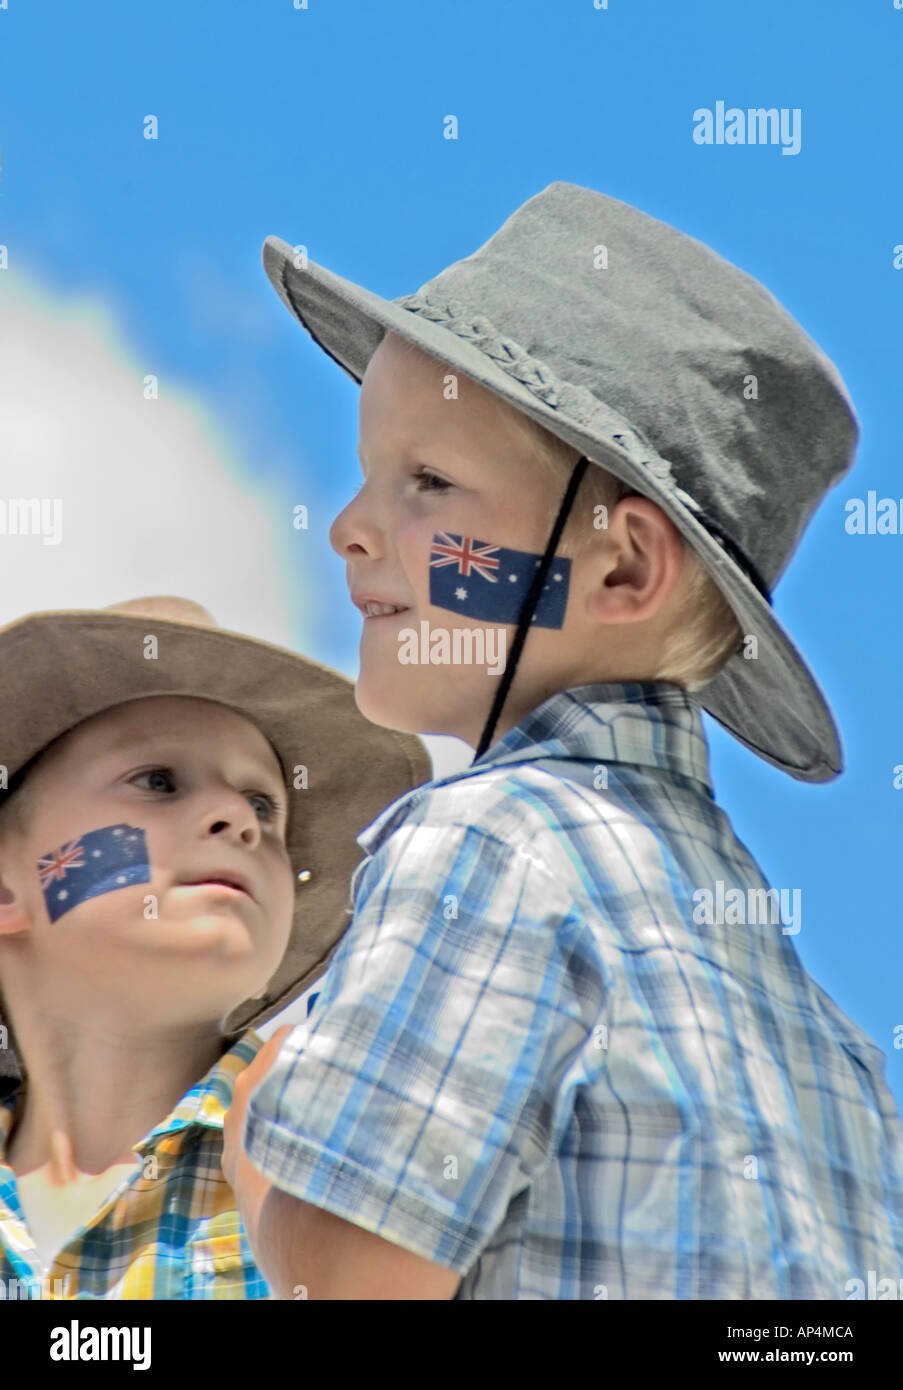 Two Australian kids, with an Aussie flag tatooed on their cheek, celebrating Australia day, Canberra, Australia Stock Photo